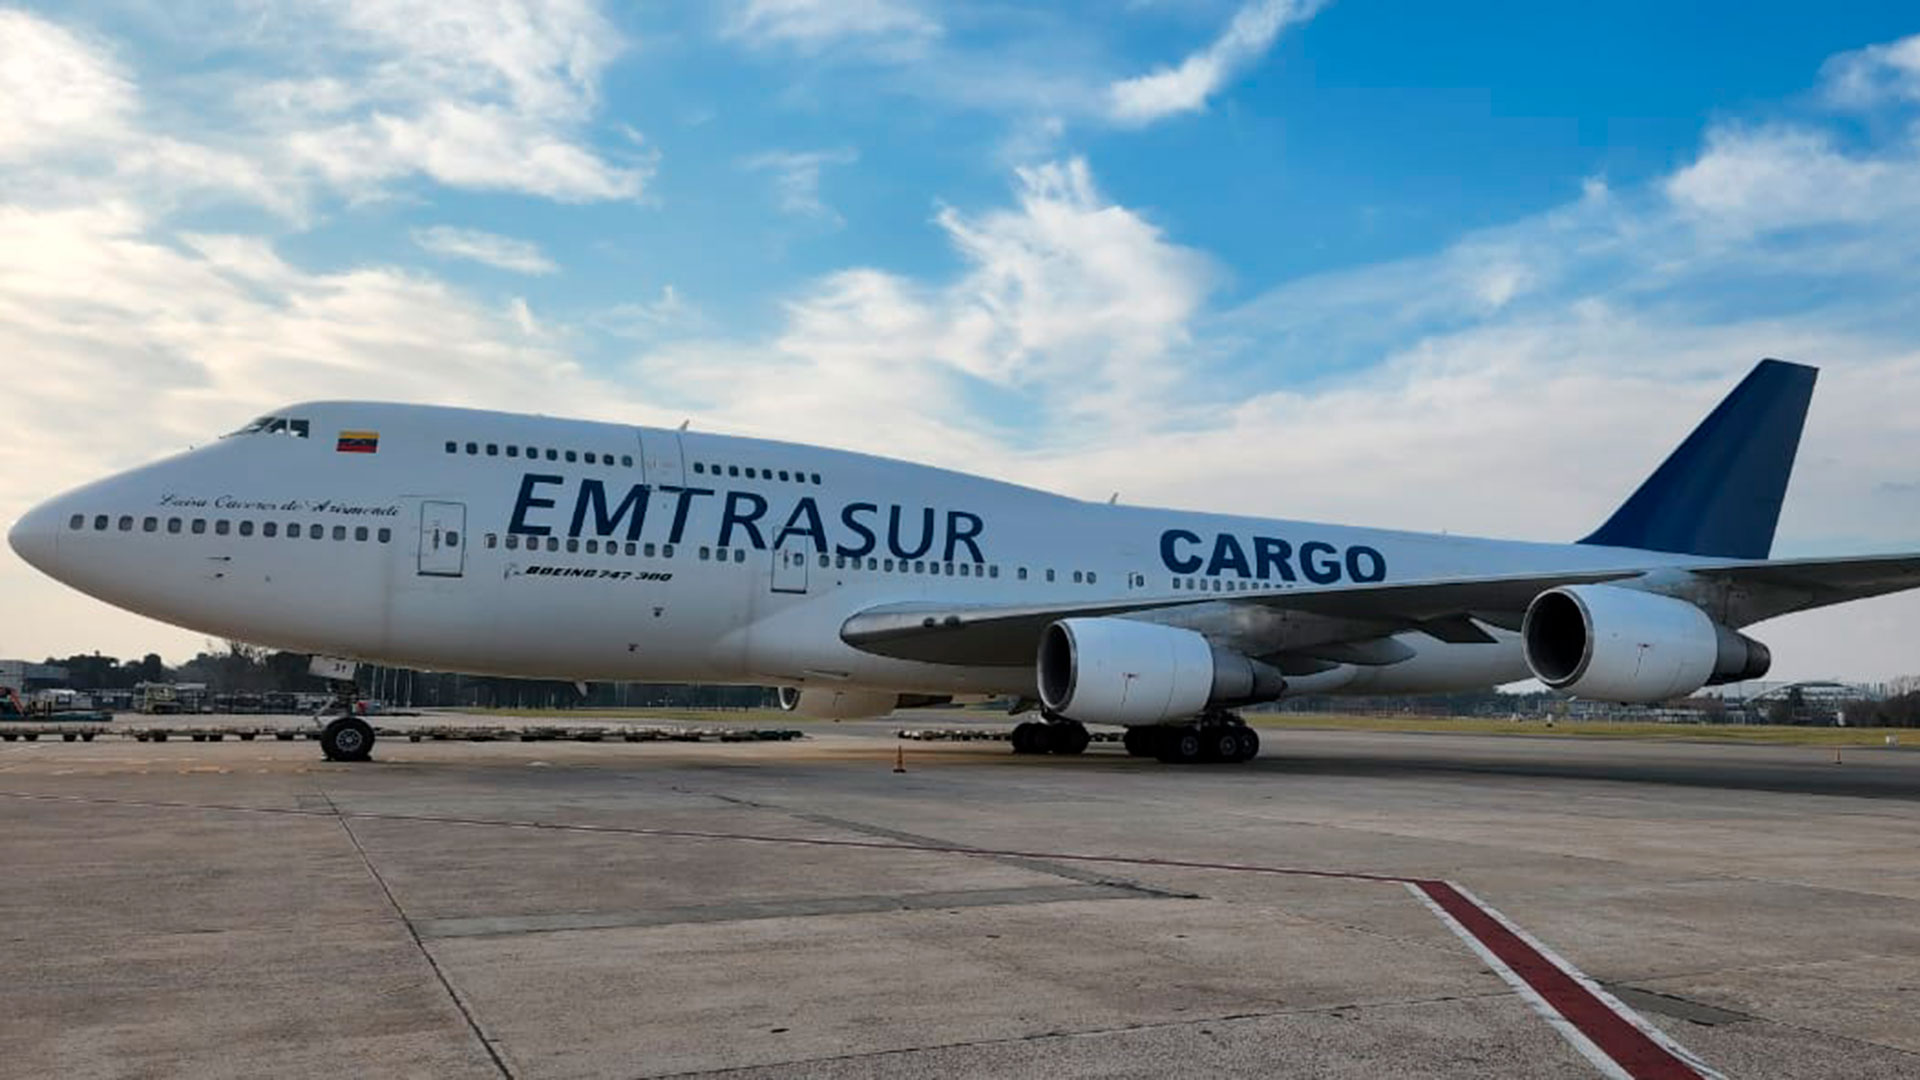 El avión de Emtrasur sigue retenido en Ezeiza desde el 8 de junio